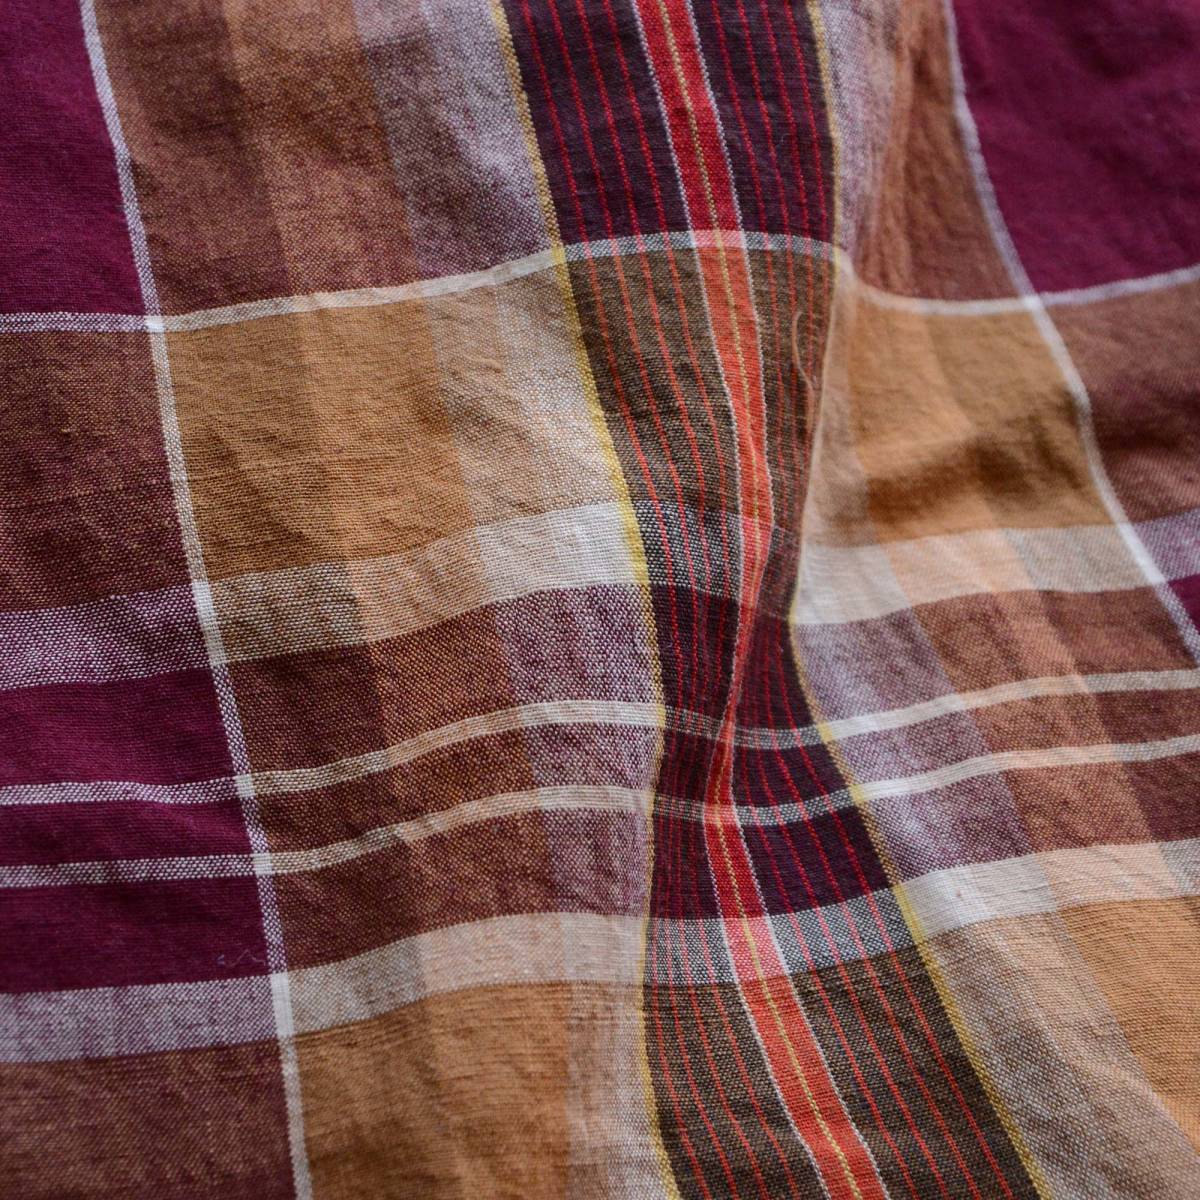 古布 木綿 布団皮 格子模様 襤褸 ジャパンヴィンテージ ファブリック テキスタイル Japanese Fabric Vintage Cotton Futon Boro Textile_画像9